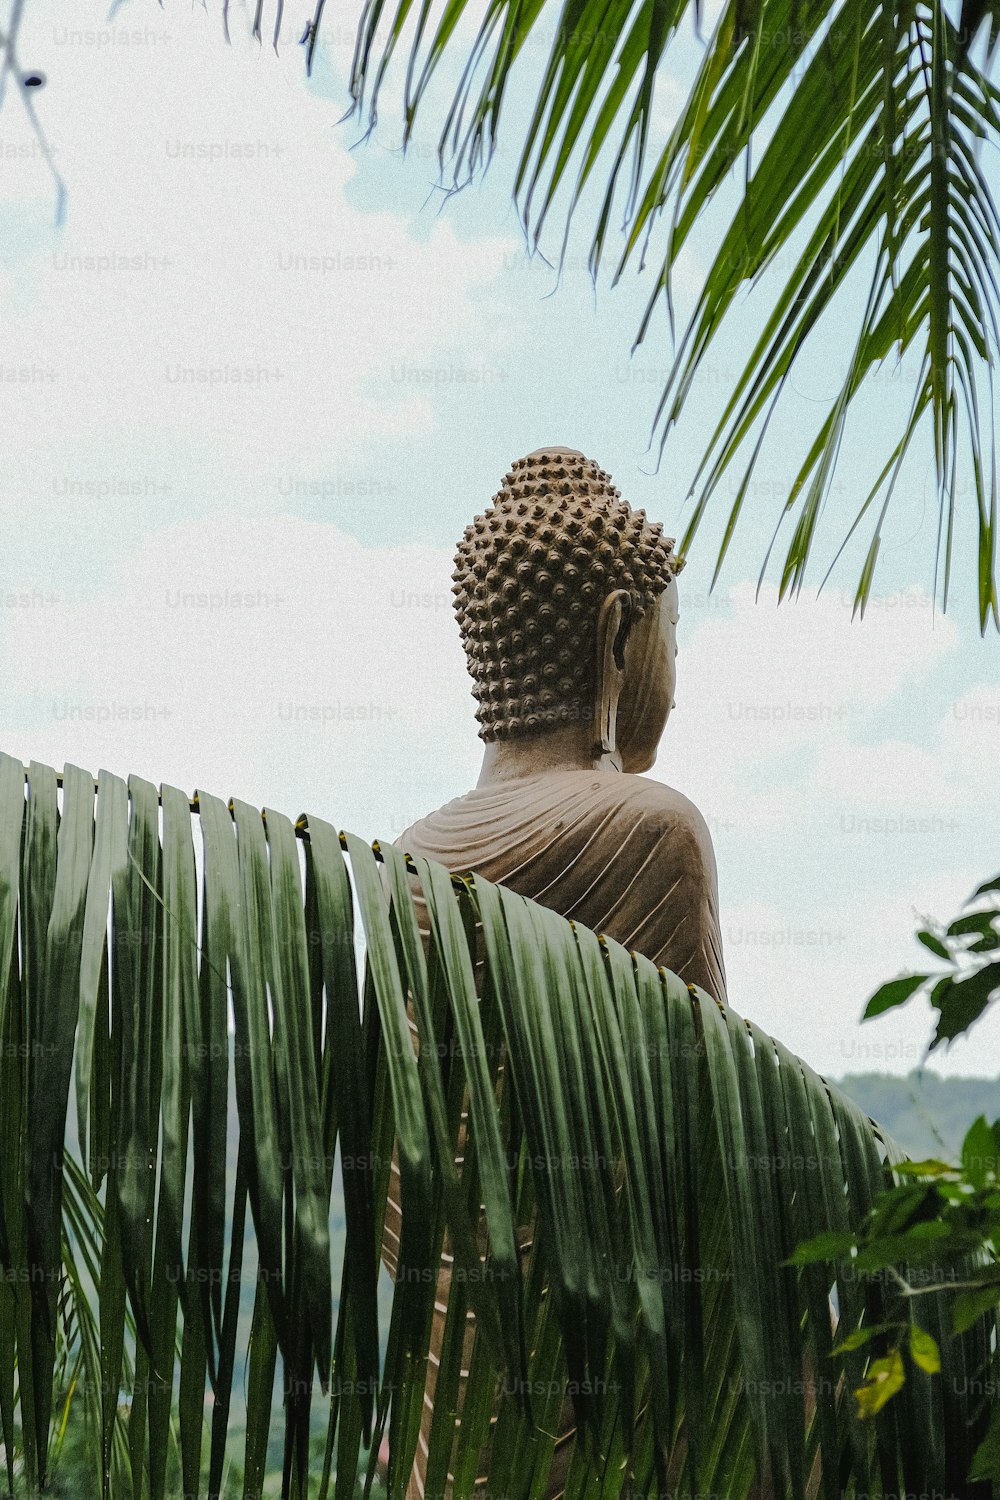 Eine Buddha-Statue auf einem üppigen grünen Feld